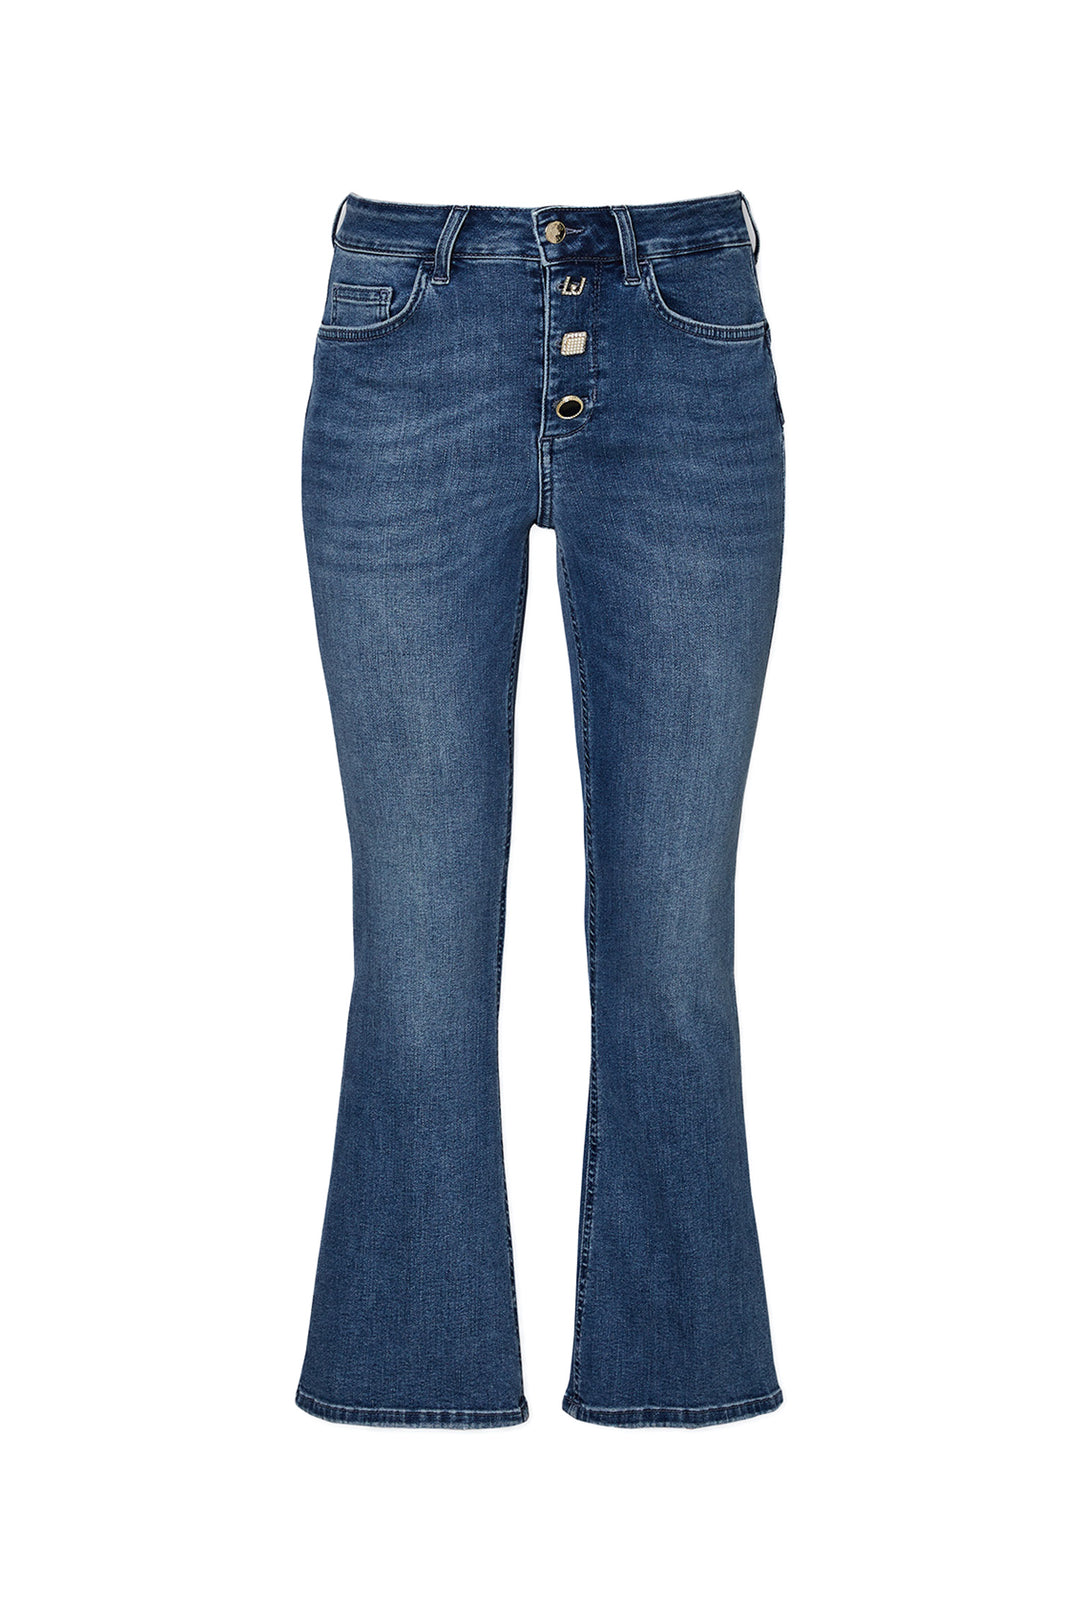 LIU JO Jeans bootcut cropped in denim stretch con bottoni - Mancinelli 1954